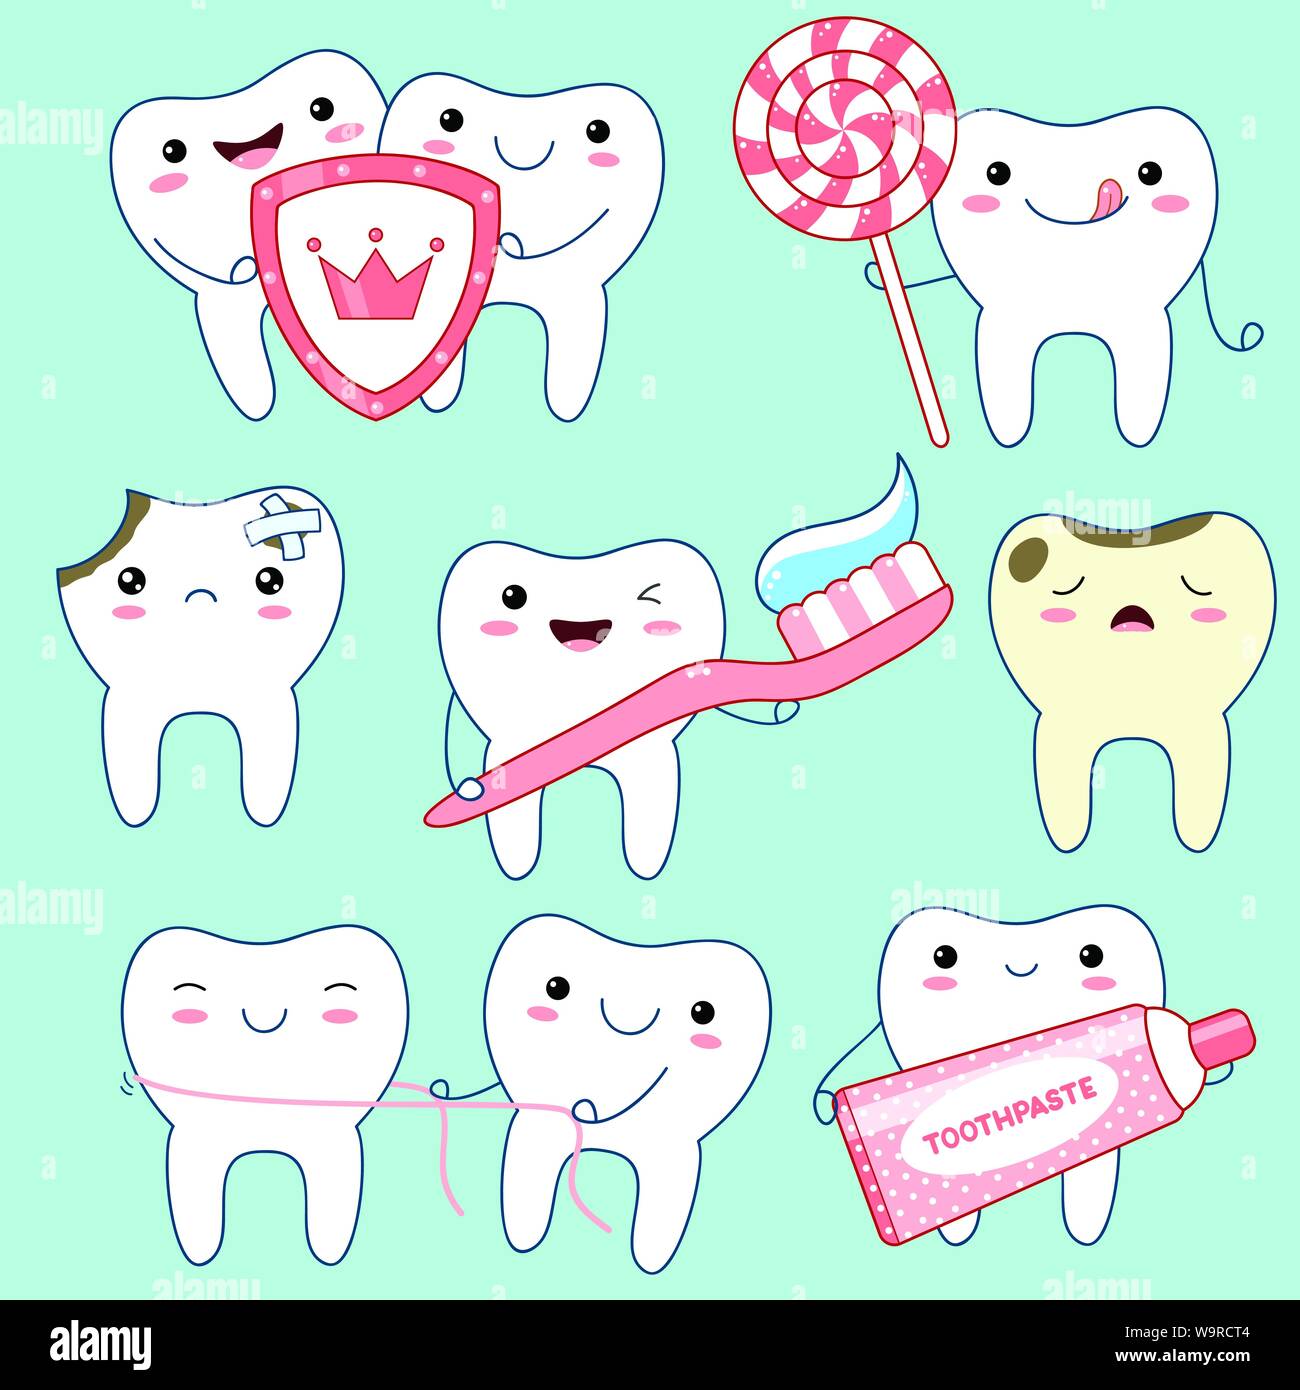 Satz von Süß lustig Zähne Symbole in kawaii Stil mit lächelnden Gesicht und rosa Wangen. Sammlung von Abbildungen auf das Thema Mundhygiene. EPS8 Stock Vektor